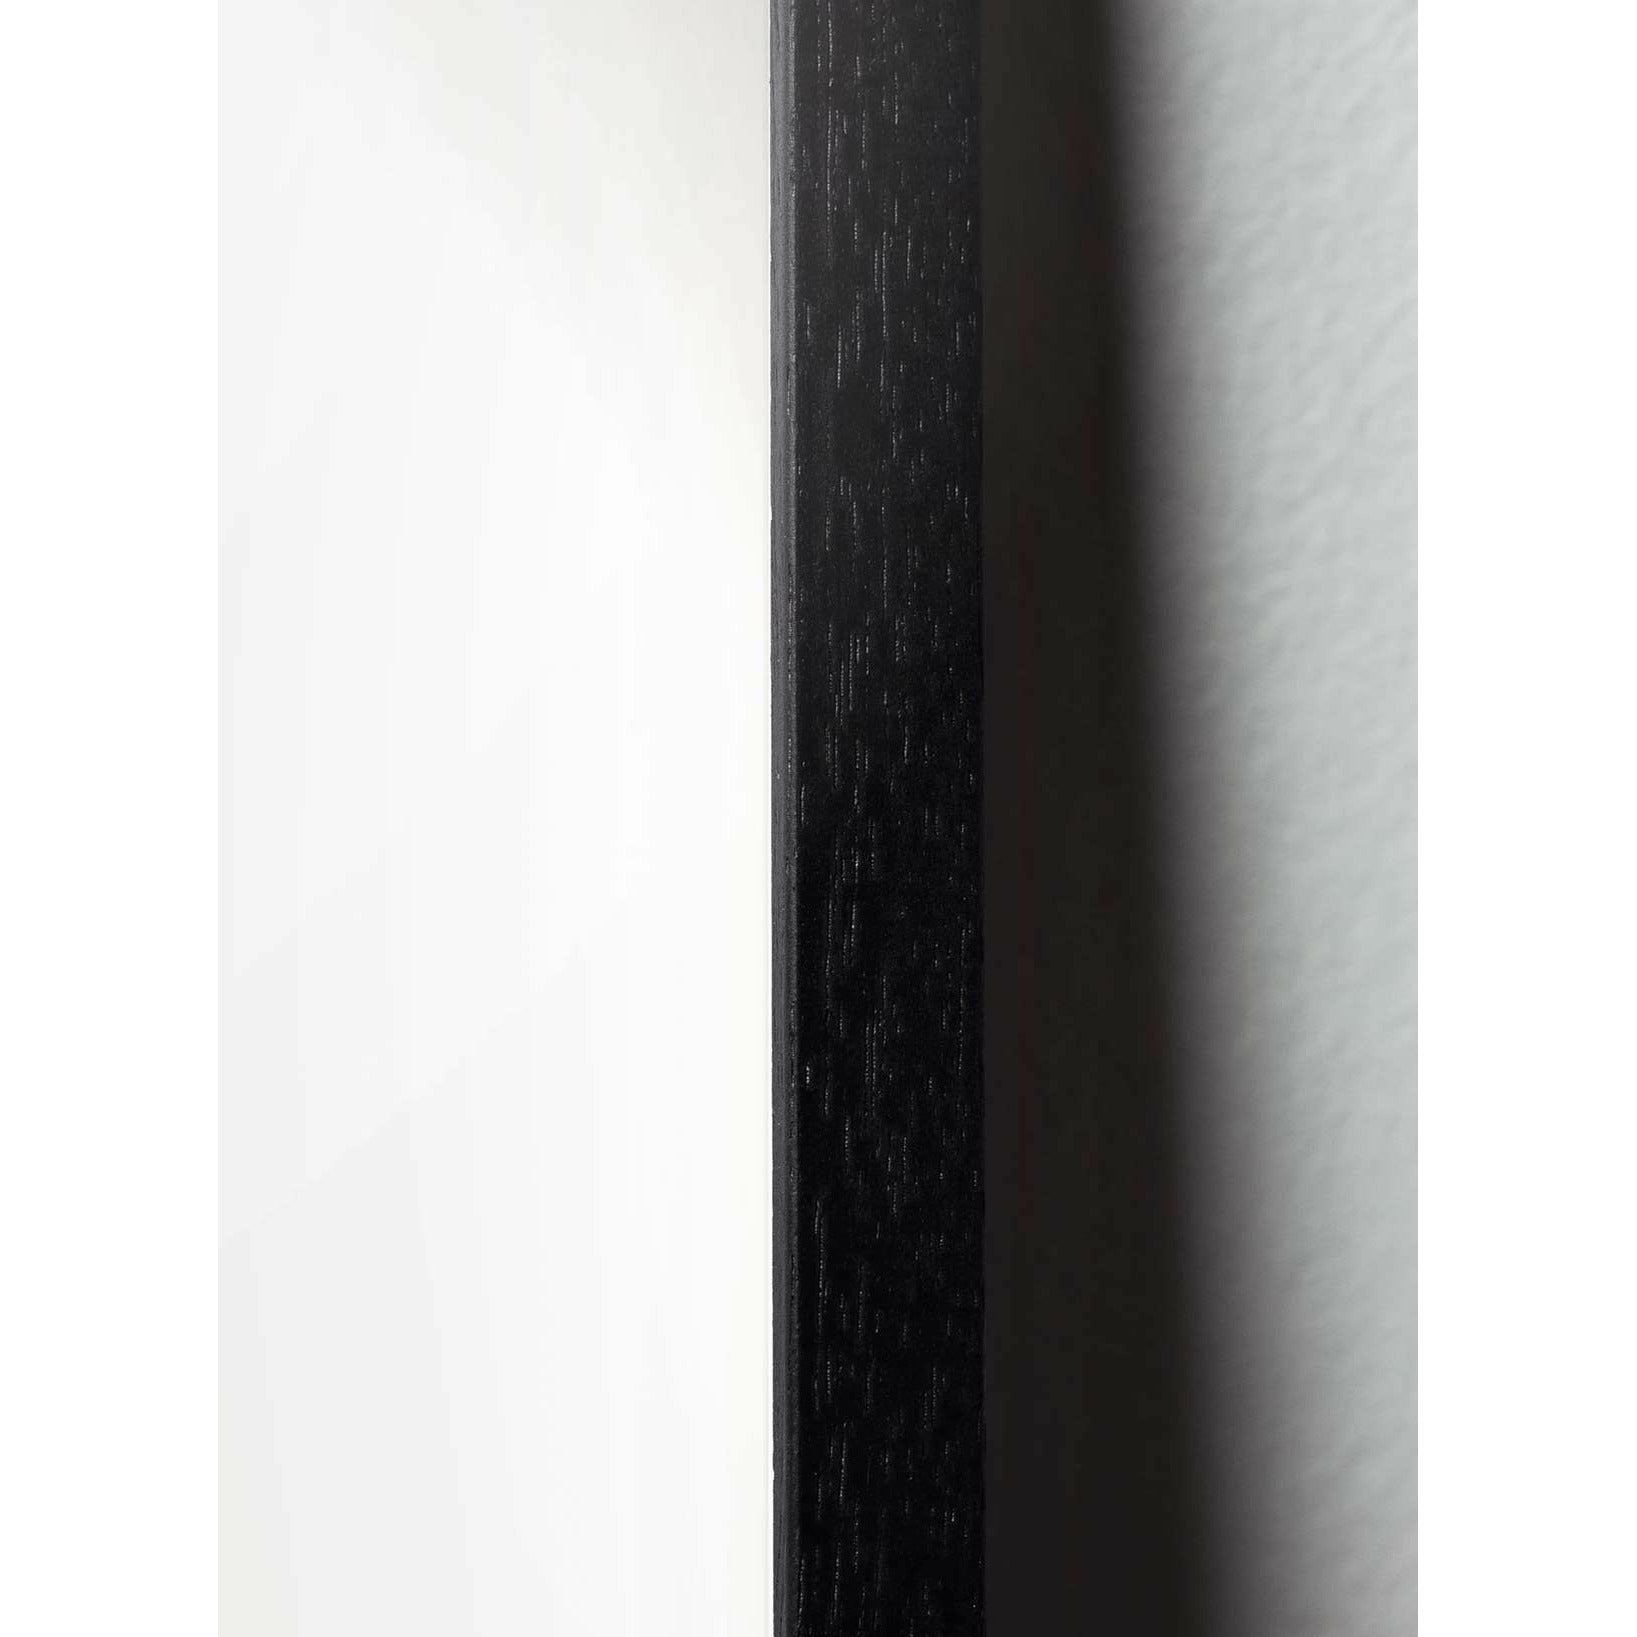 Brainchild Affiche de la ligne d'ours en peluche, cadre en bois laqué noir 70x100 cm, fond blanc